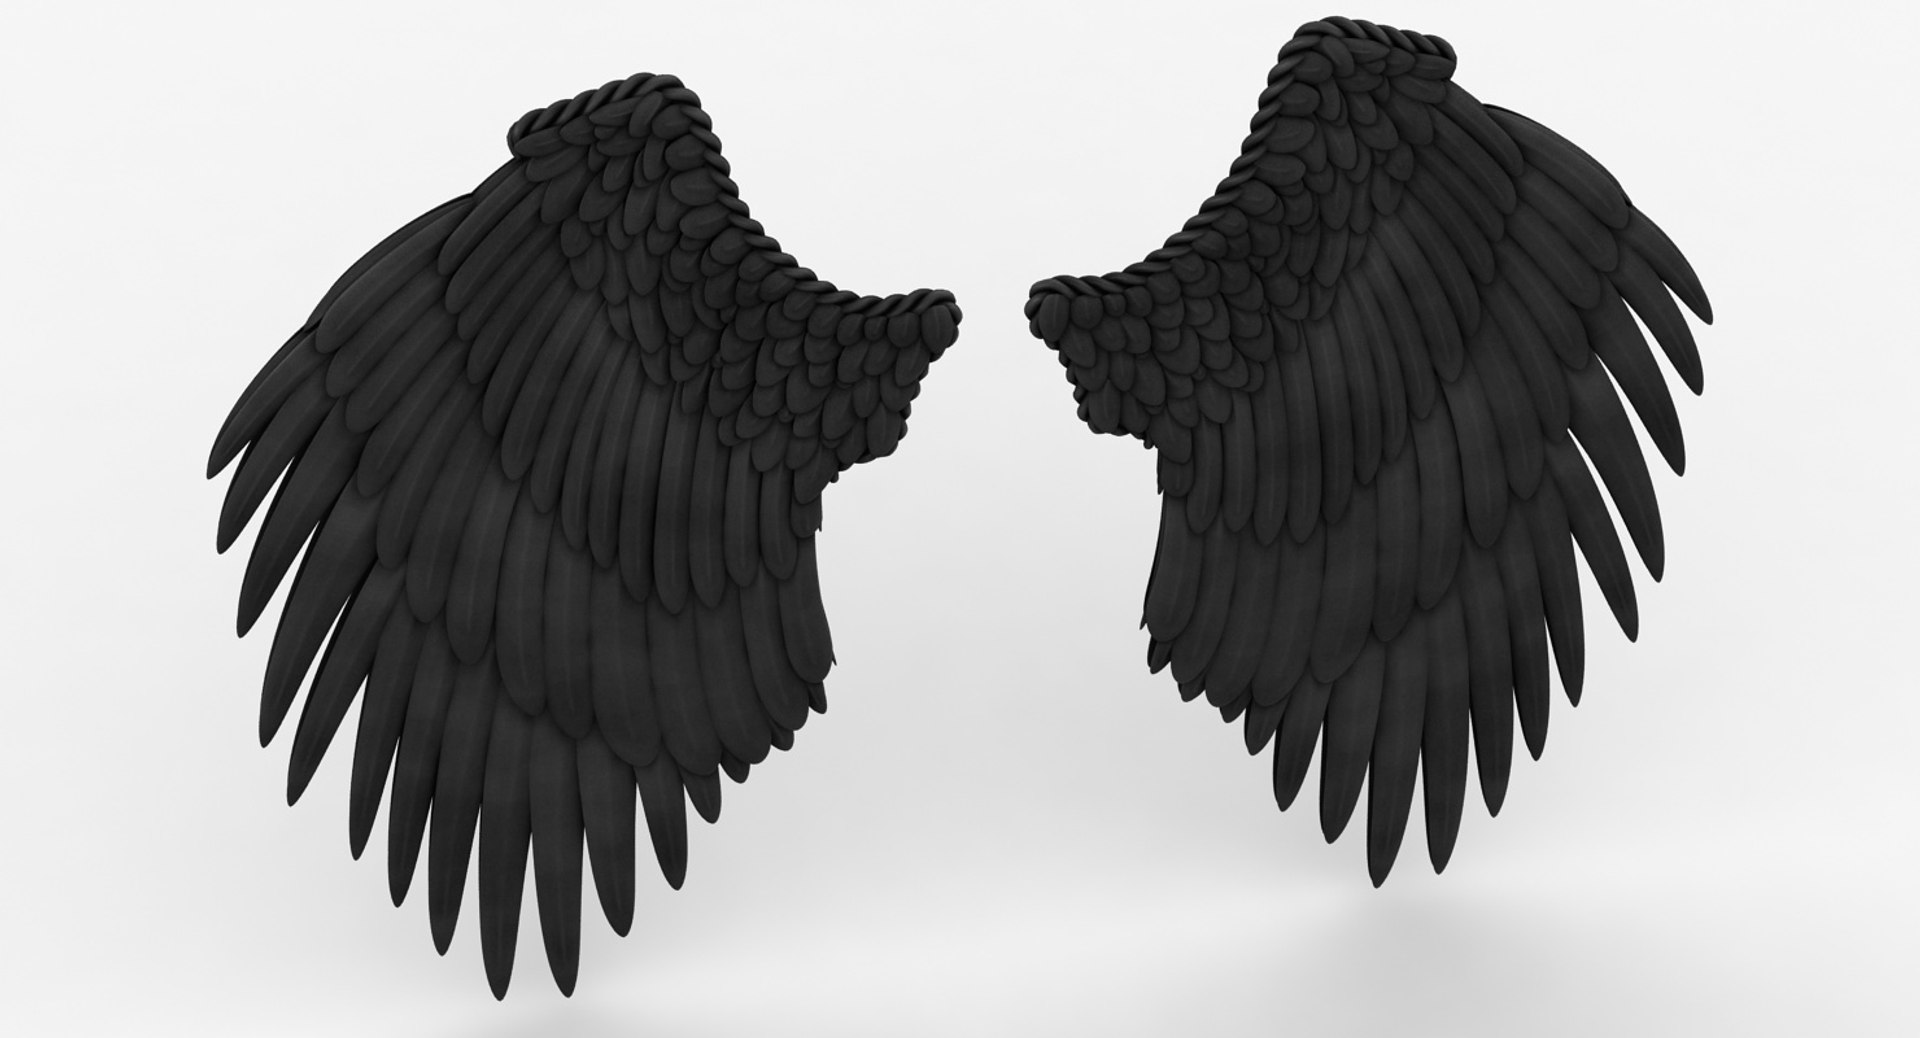 Black Wings Transparent PNG Image  Demon wings, Black wings, Angel wings  green screen